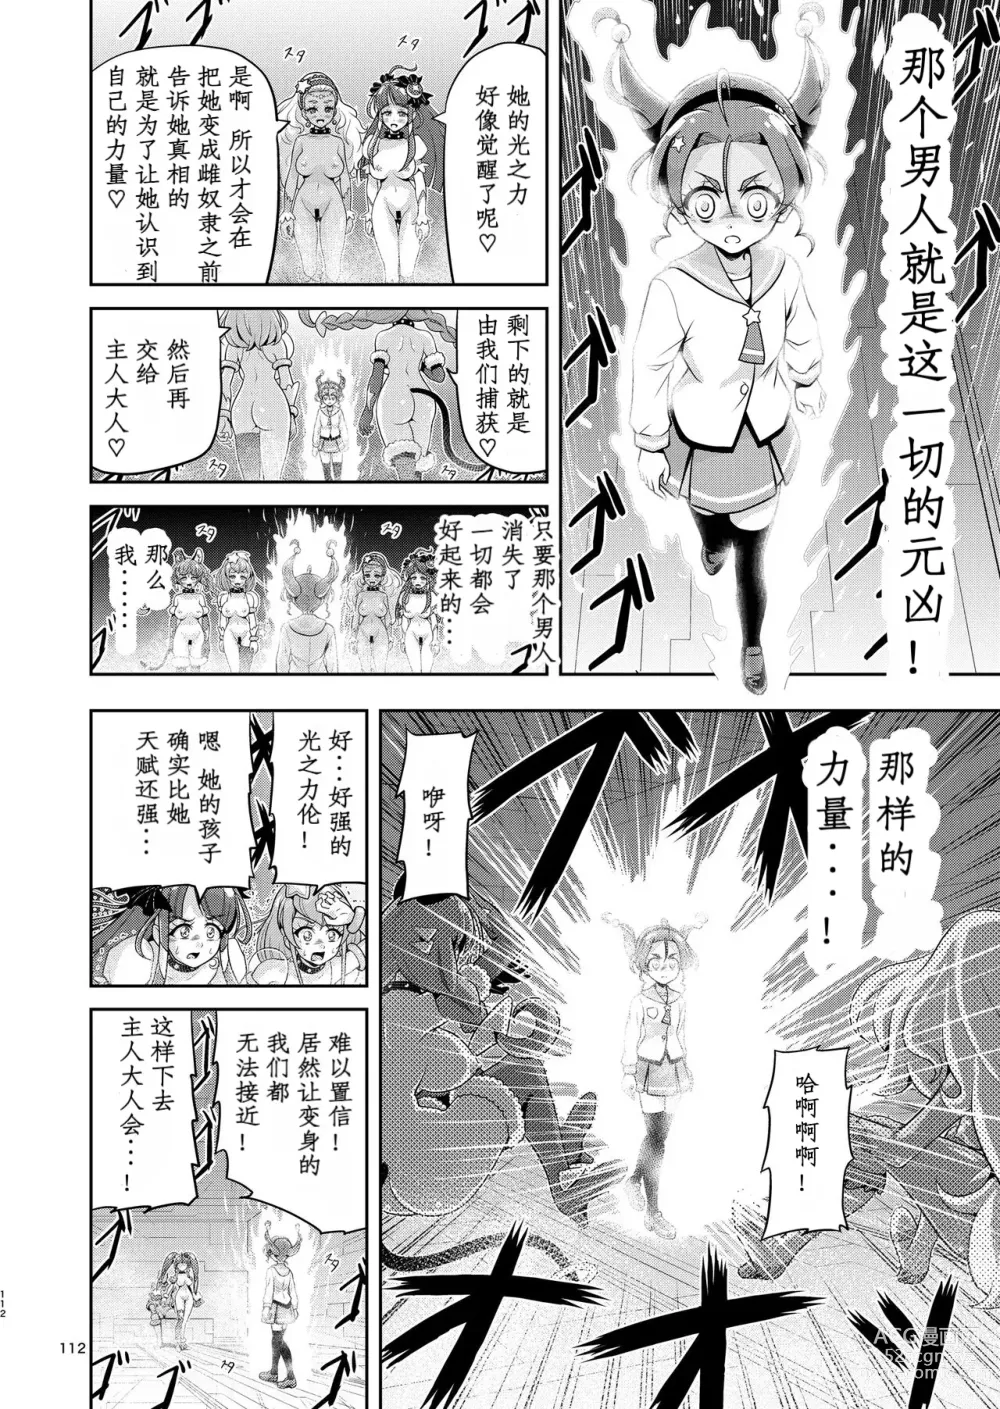 Page 61 of doujinshi Hoshi Asobi 2